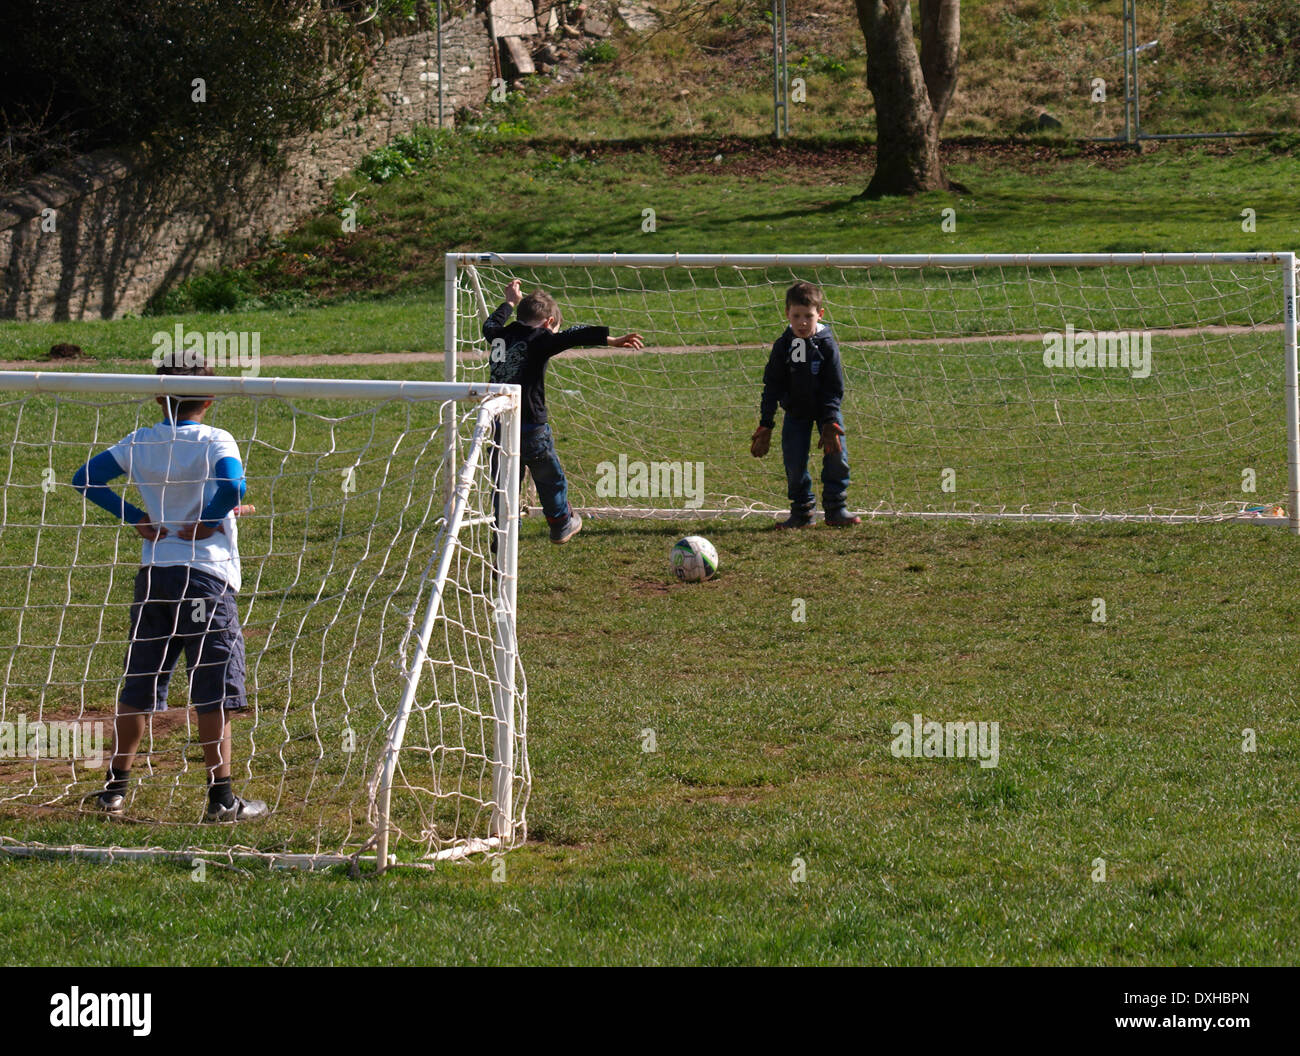 Jungen Fußball spielen in den Park, Kingsbridge, Devon, UK Stockfoto